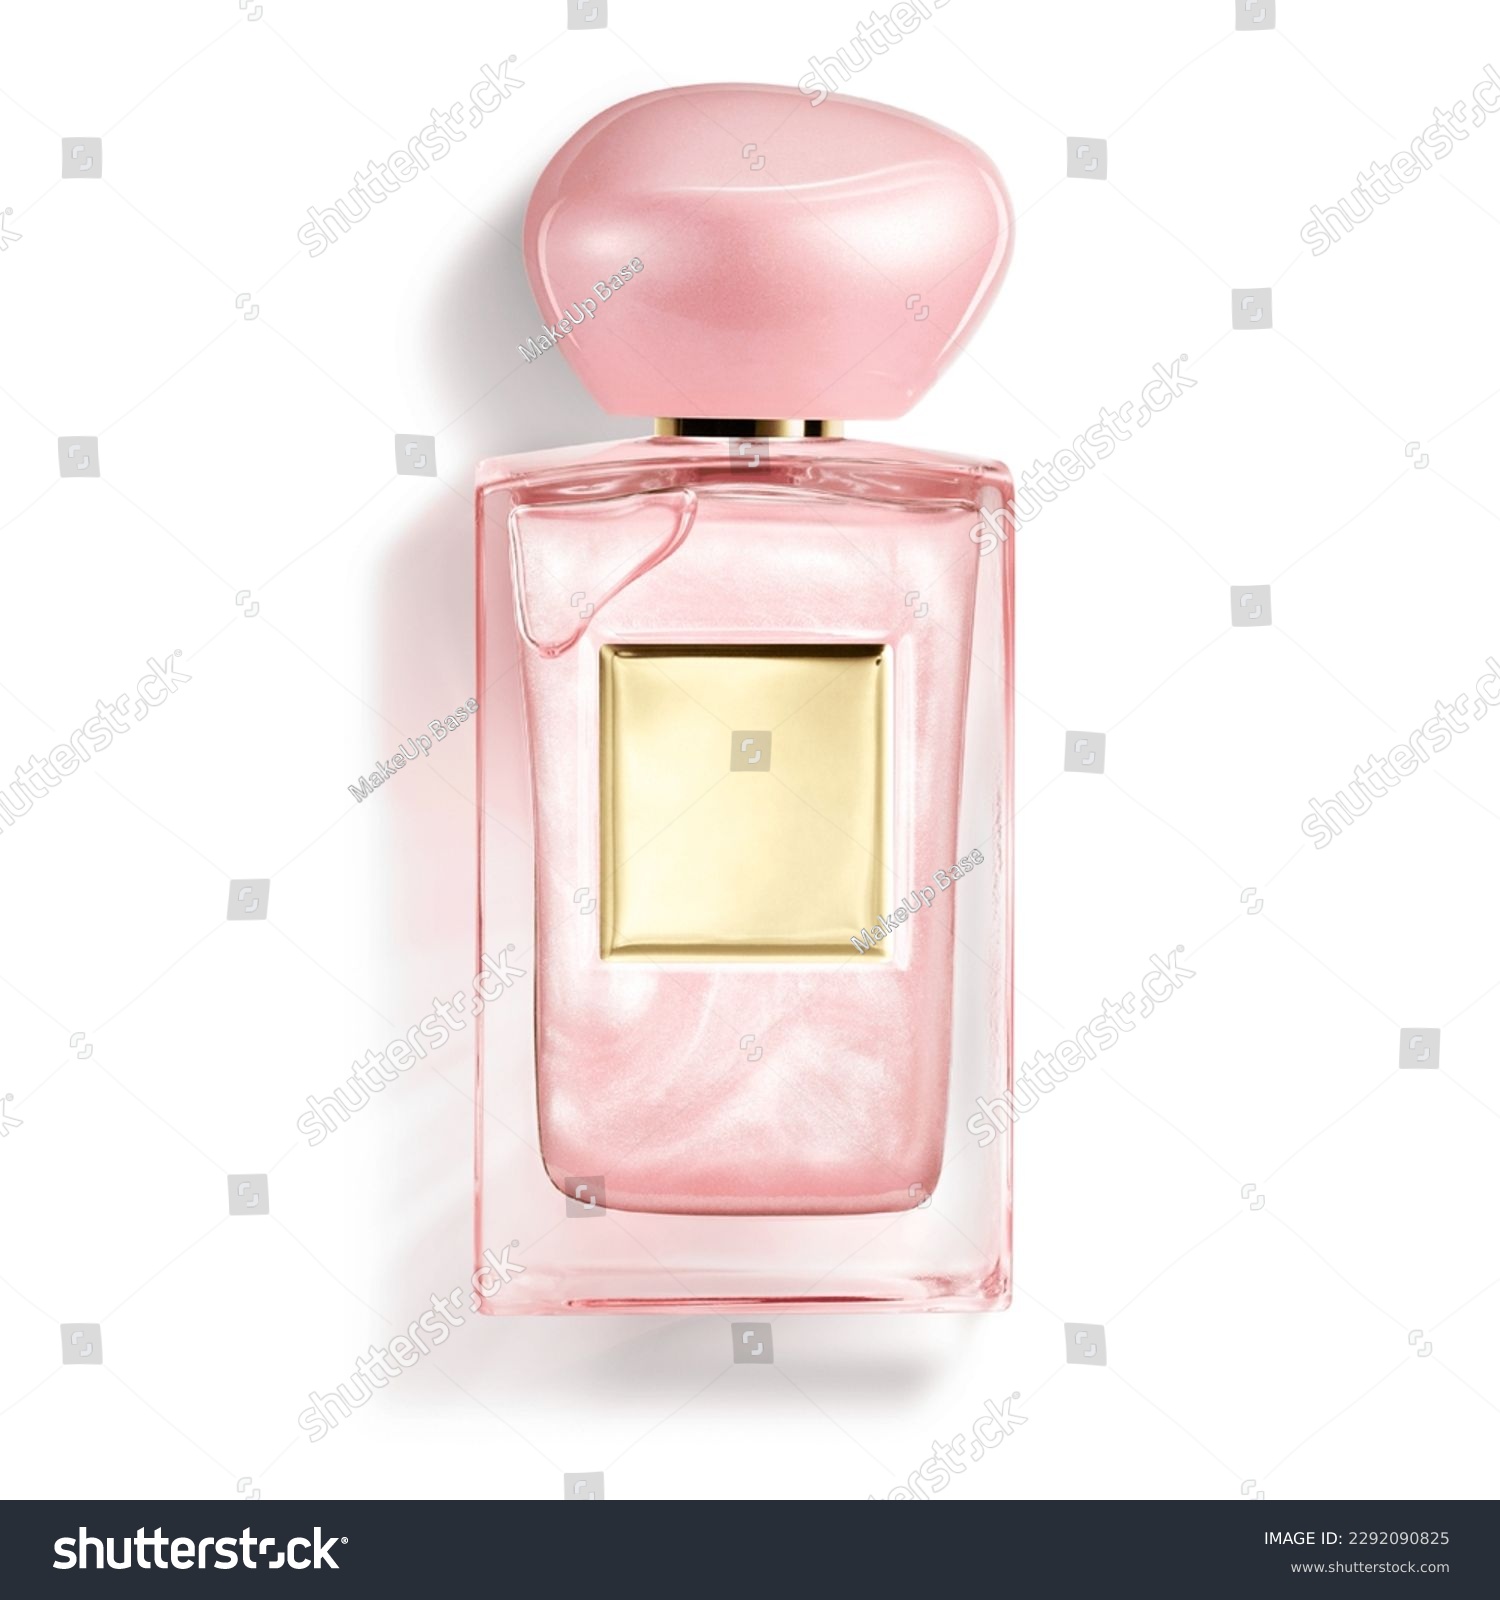 Pink Bottle of Perfume. Women's Eau De Parfum in Beautiful Glass Bottle Isolated on White. Modern Luxury Parfum De Toilette. Fragrance for Women. Perfume Spray #2292090825